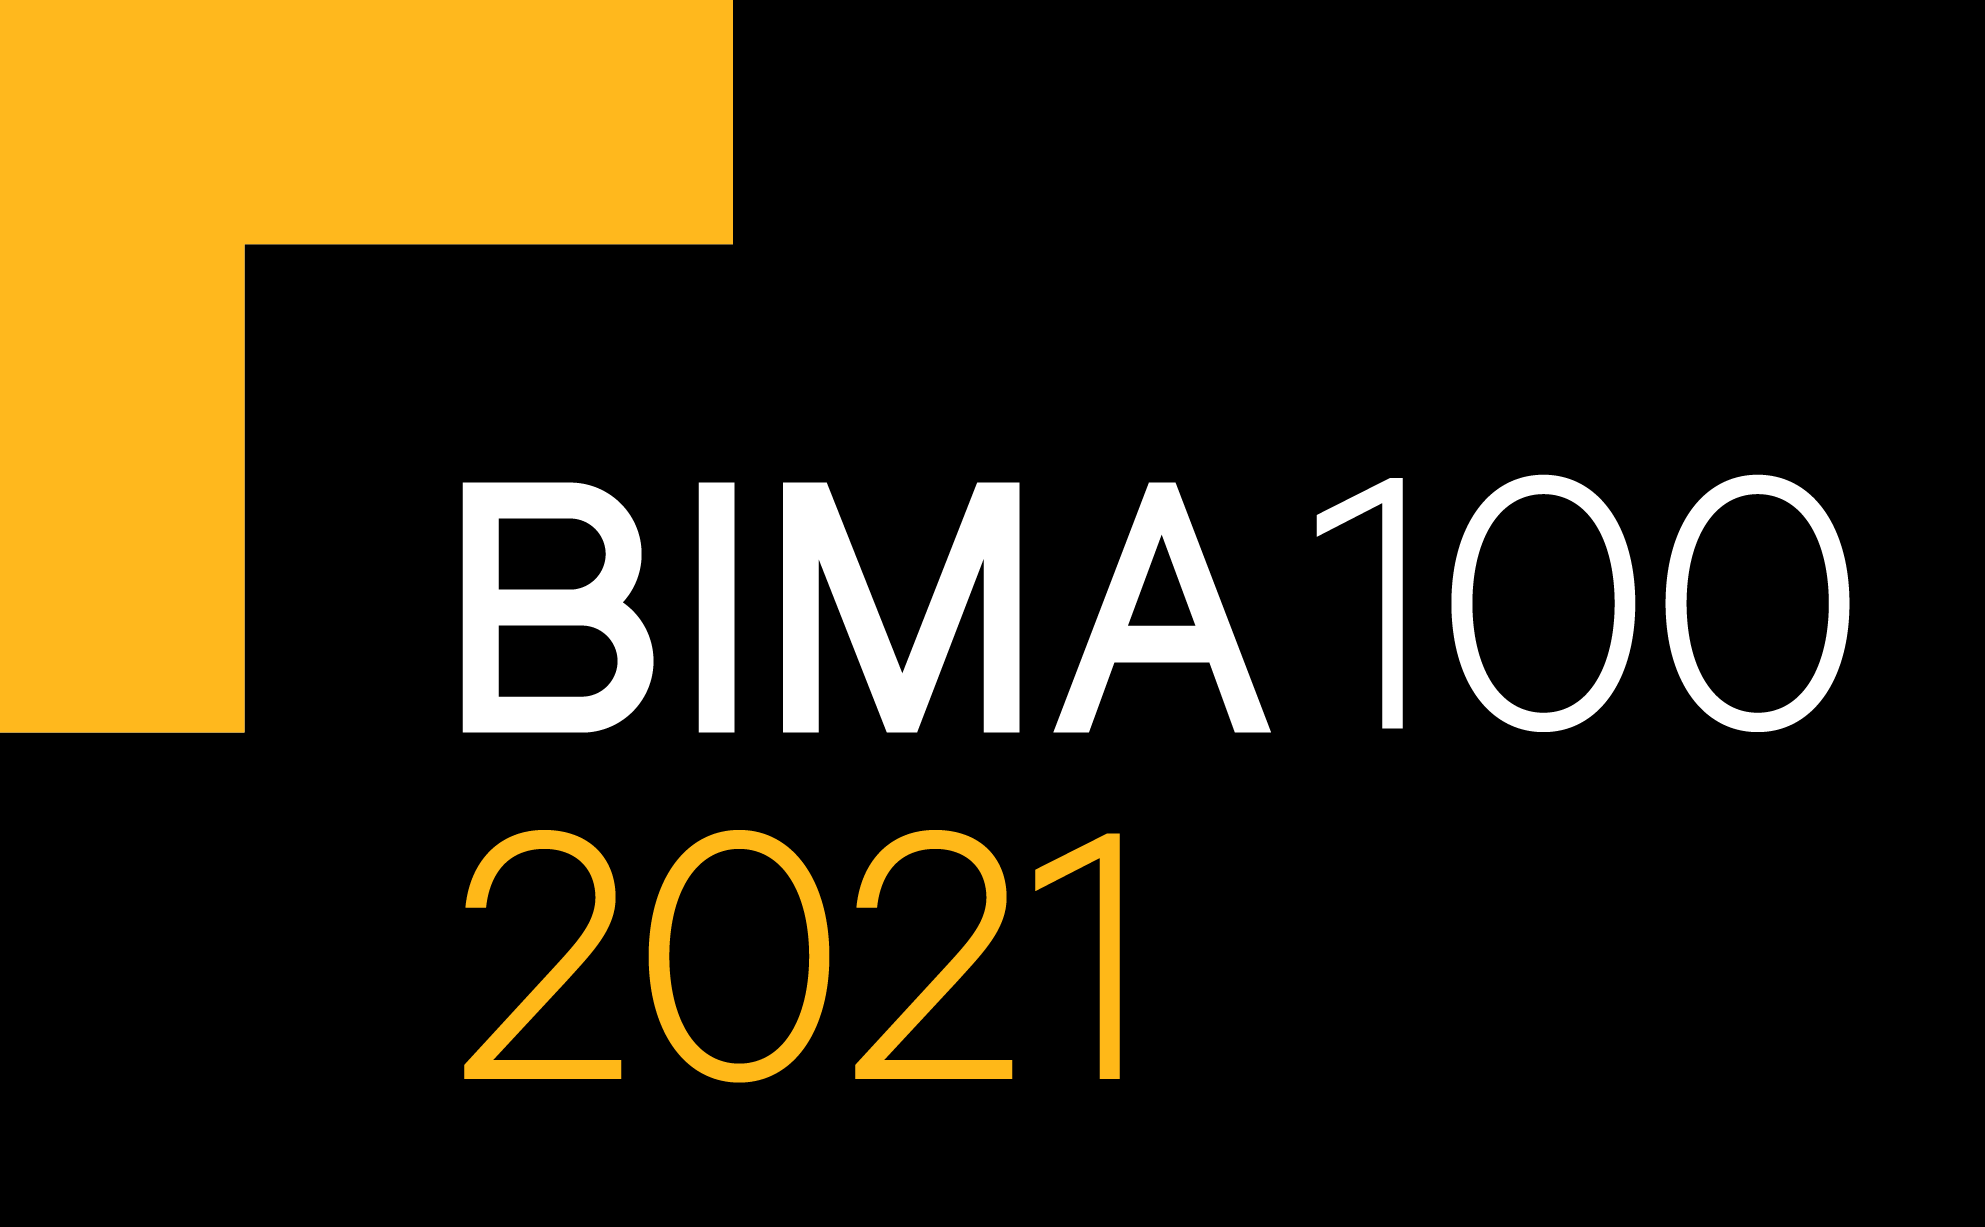 BIMA 100 2021 Badge